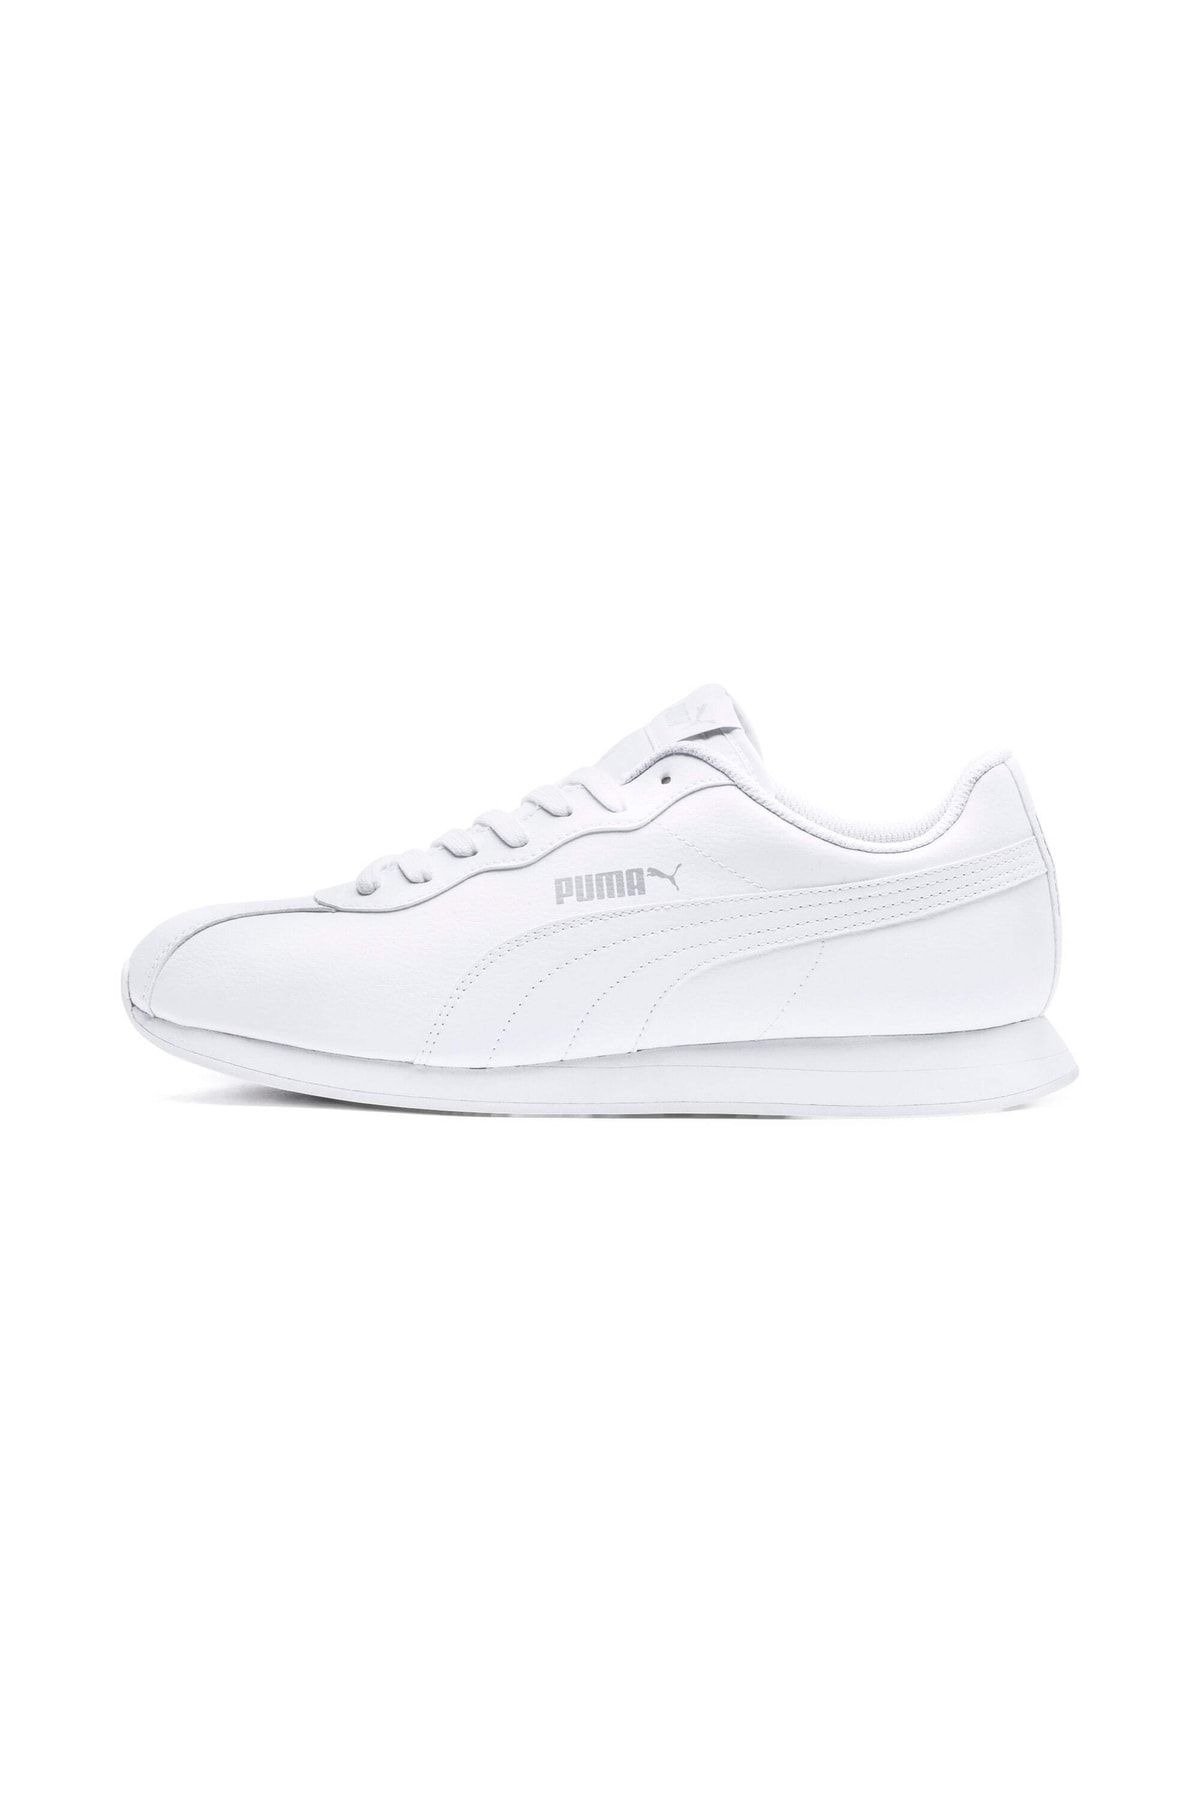 Puma Turin II Erkek Beyaz Spor Ayakkabı (366962-03)